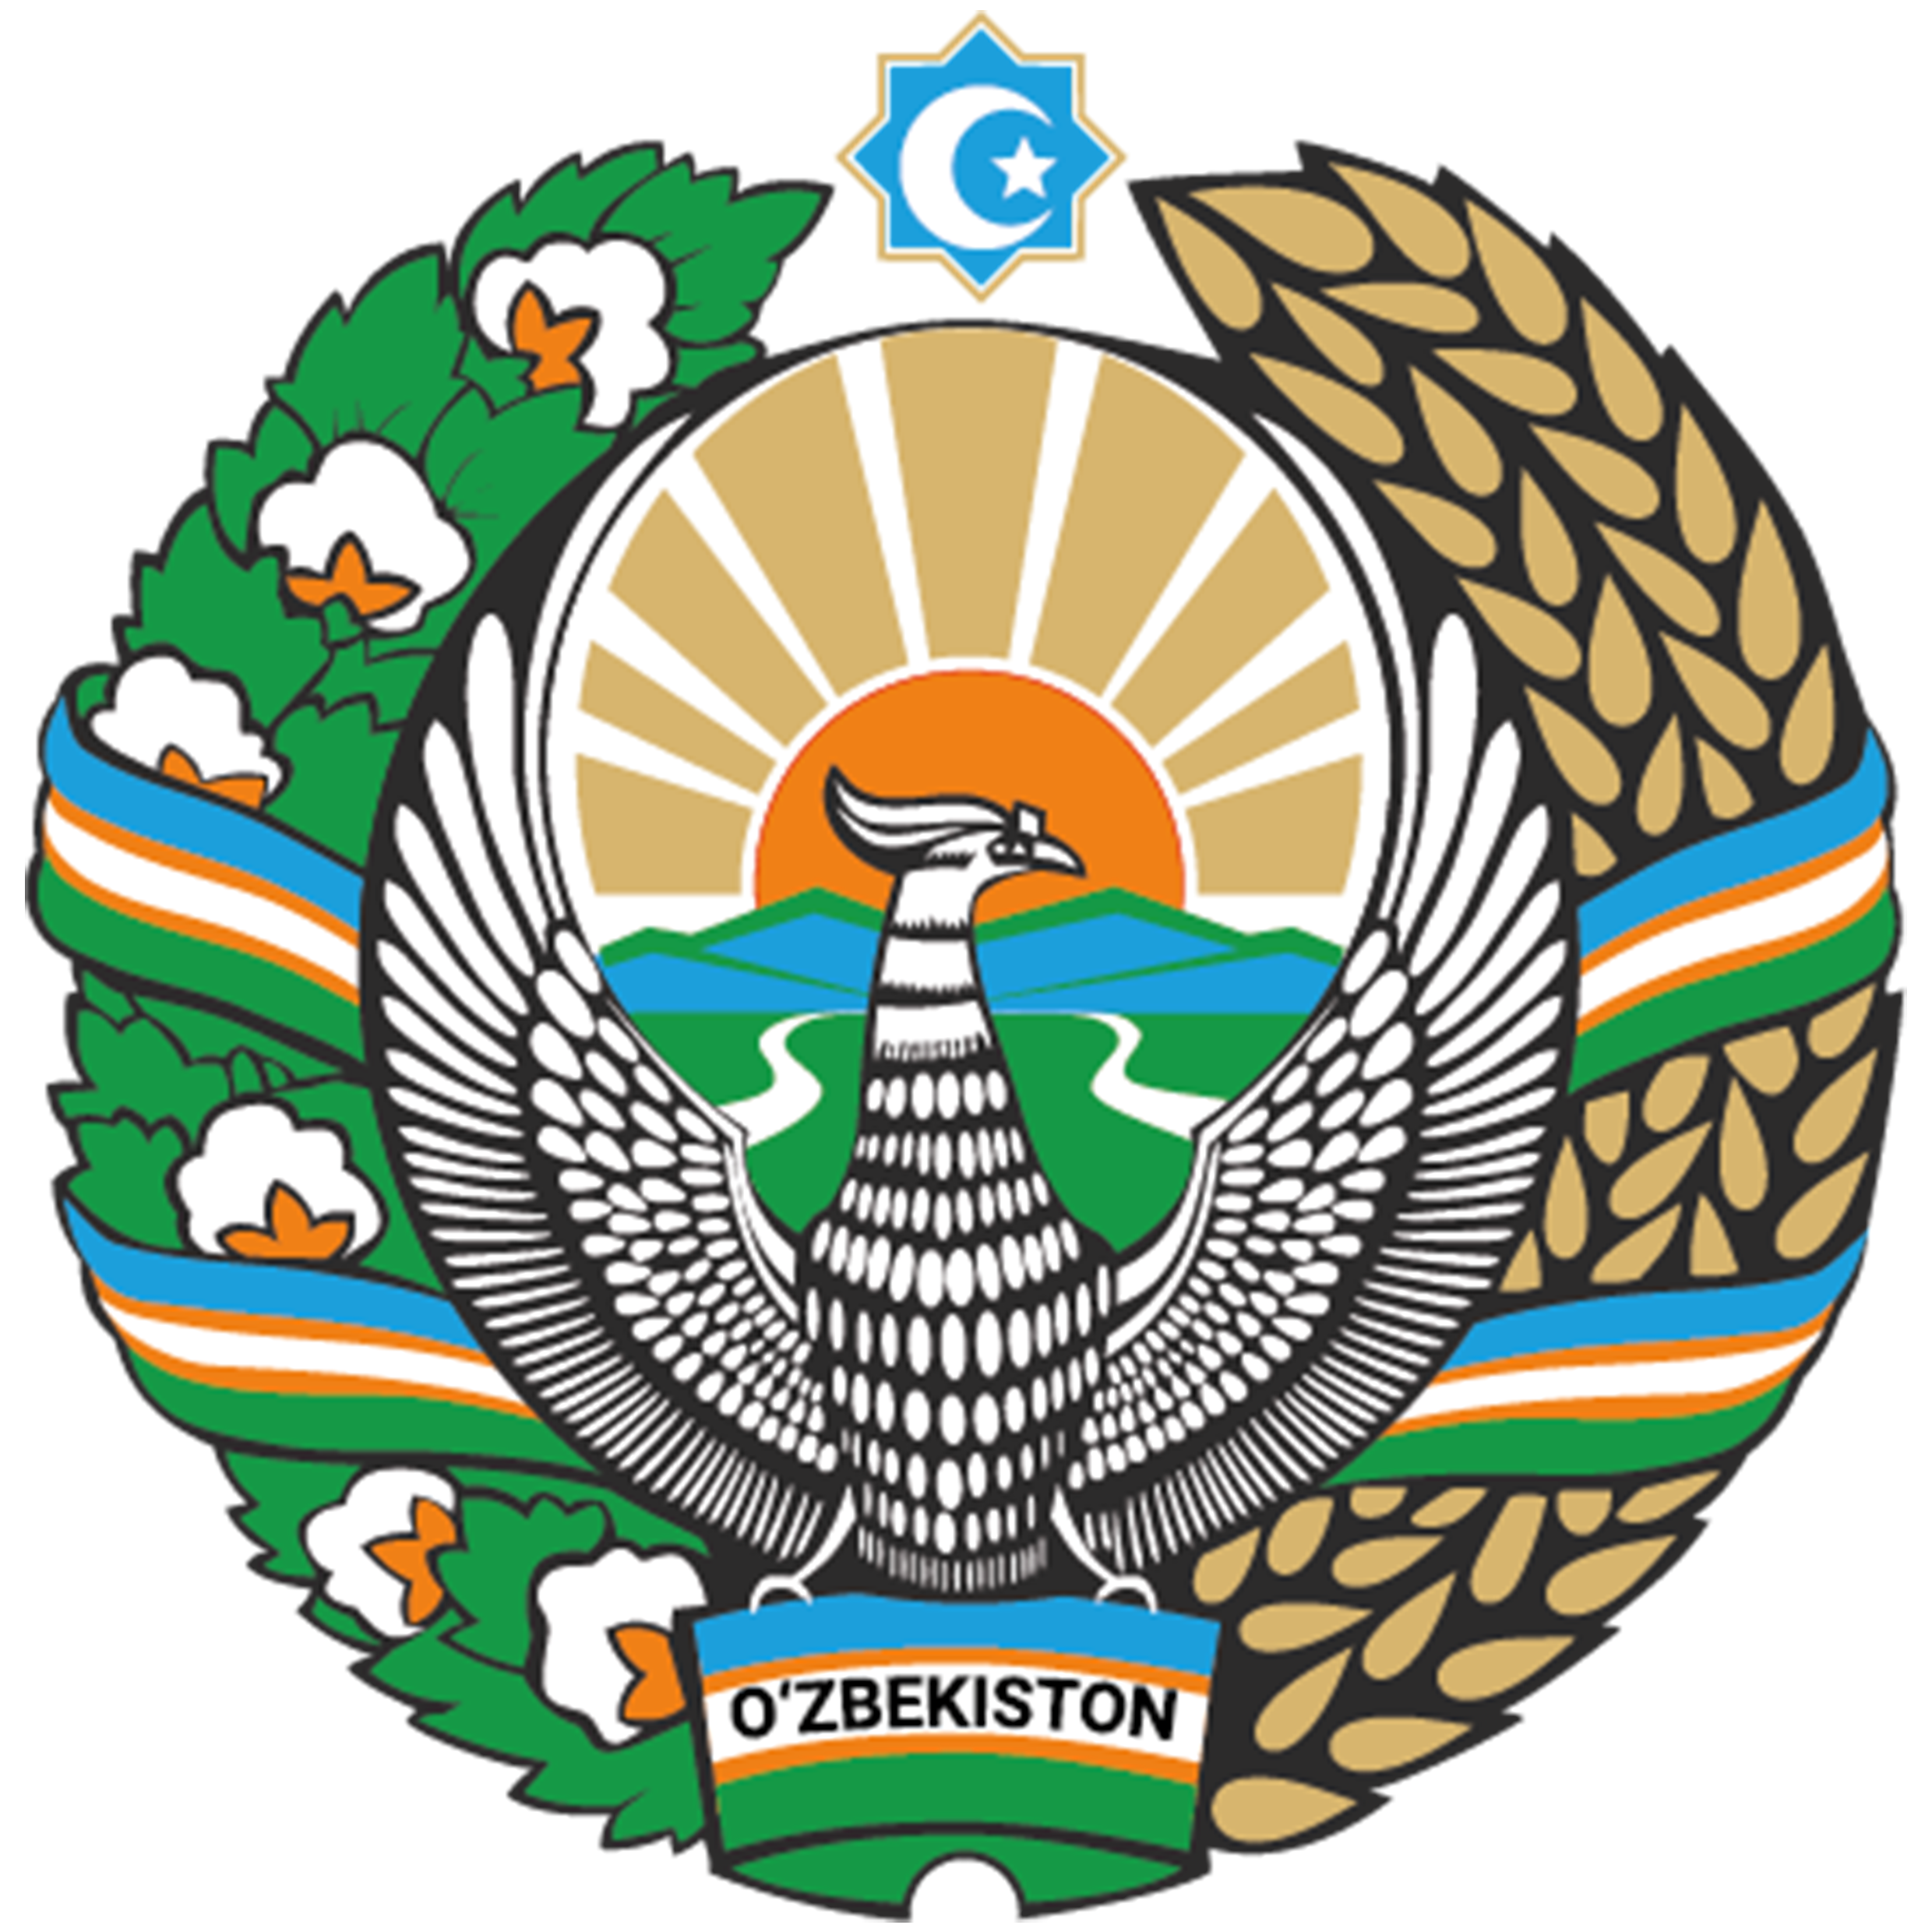 Правительственный портал Республики Узбекистан